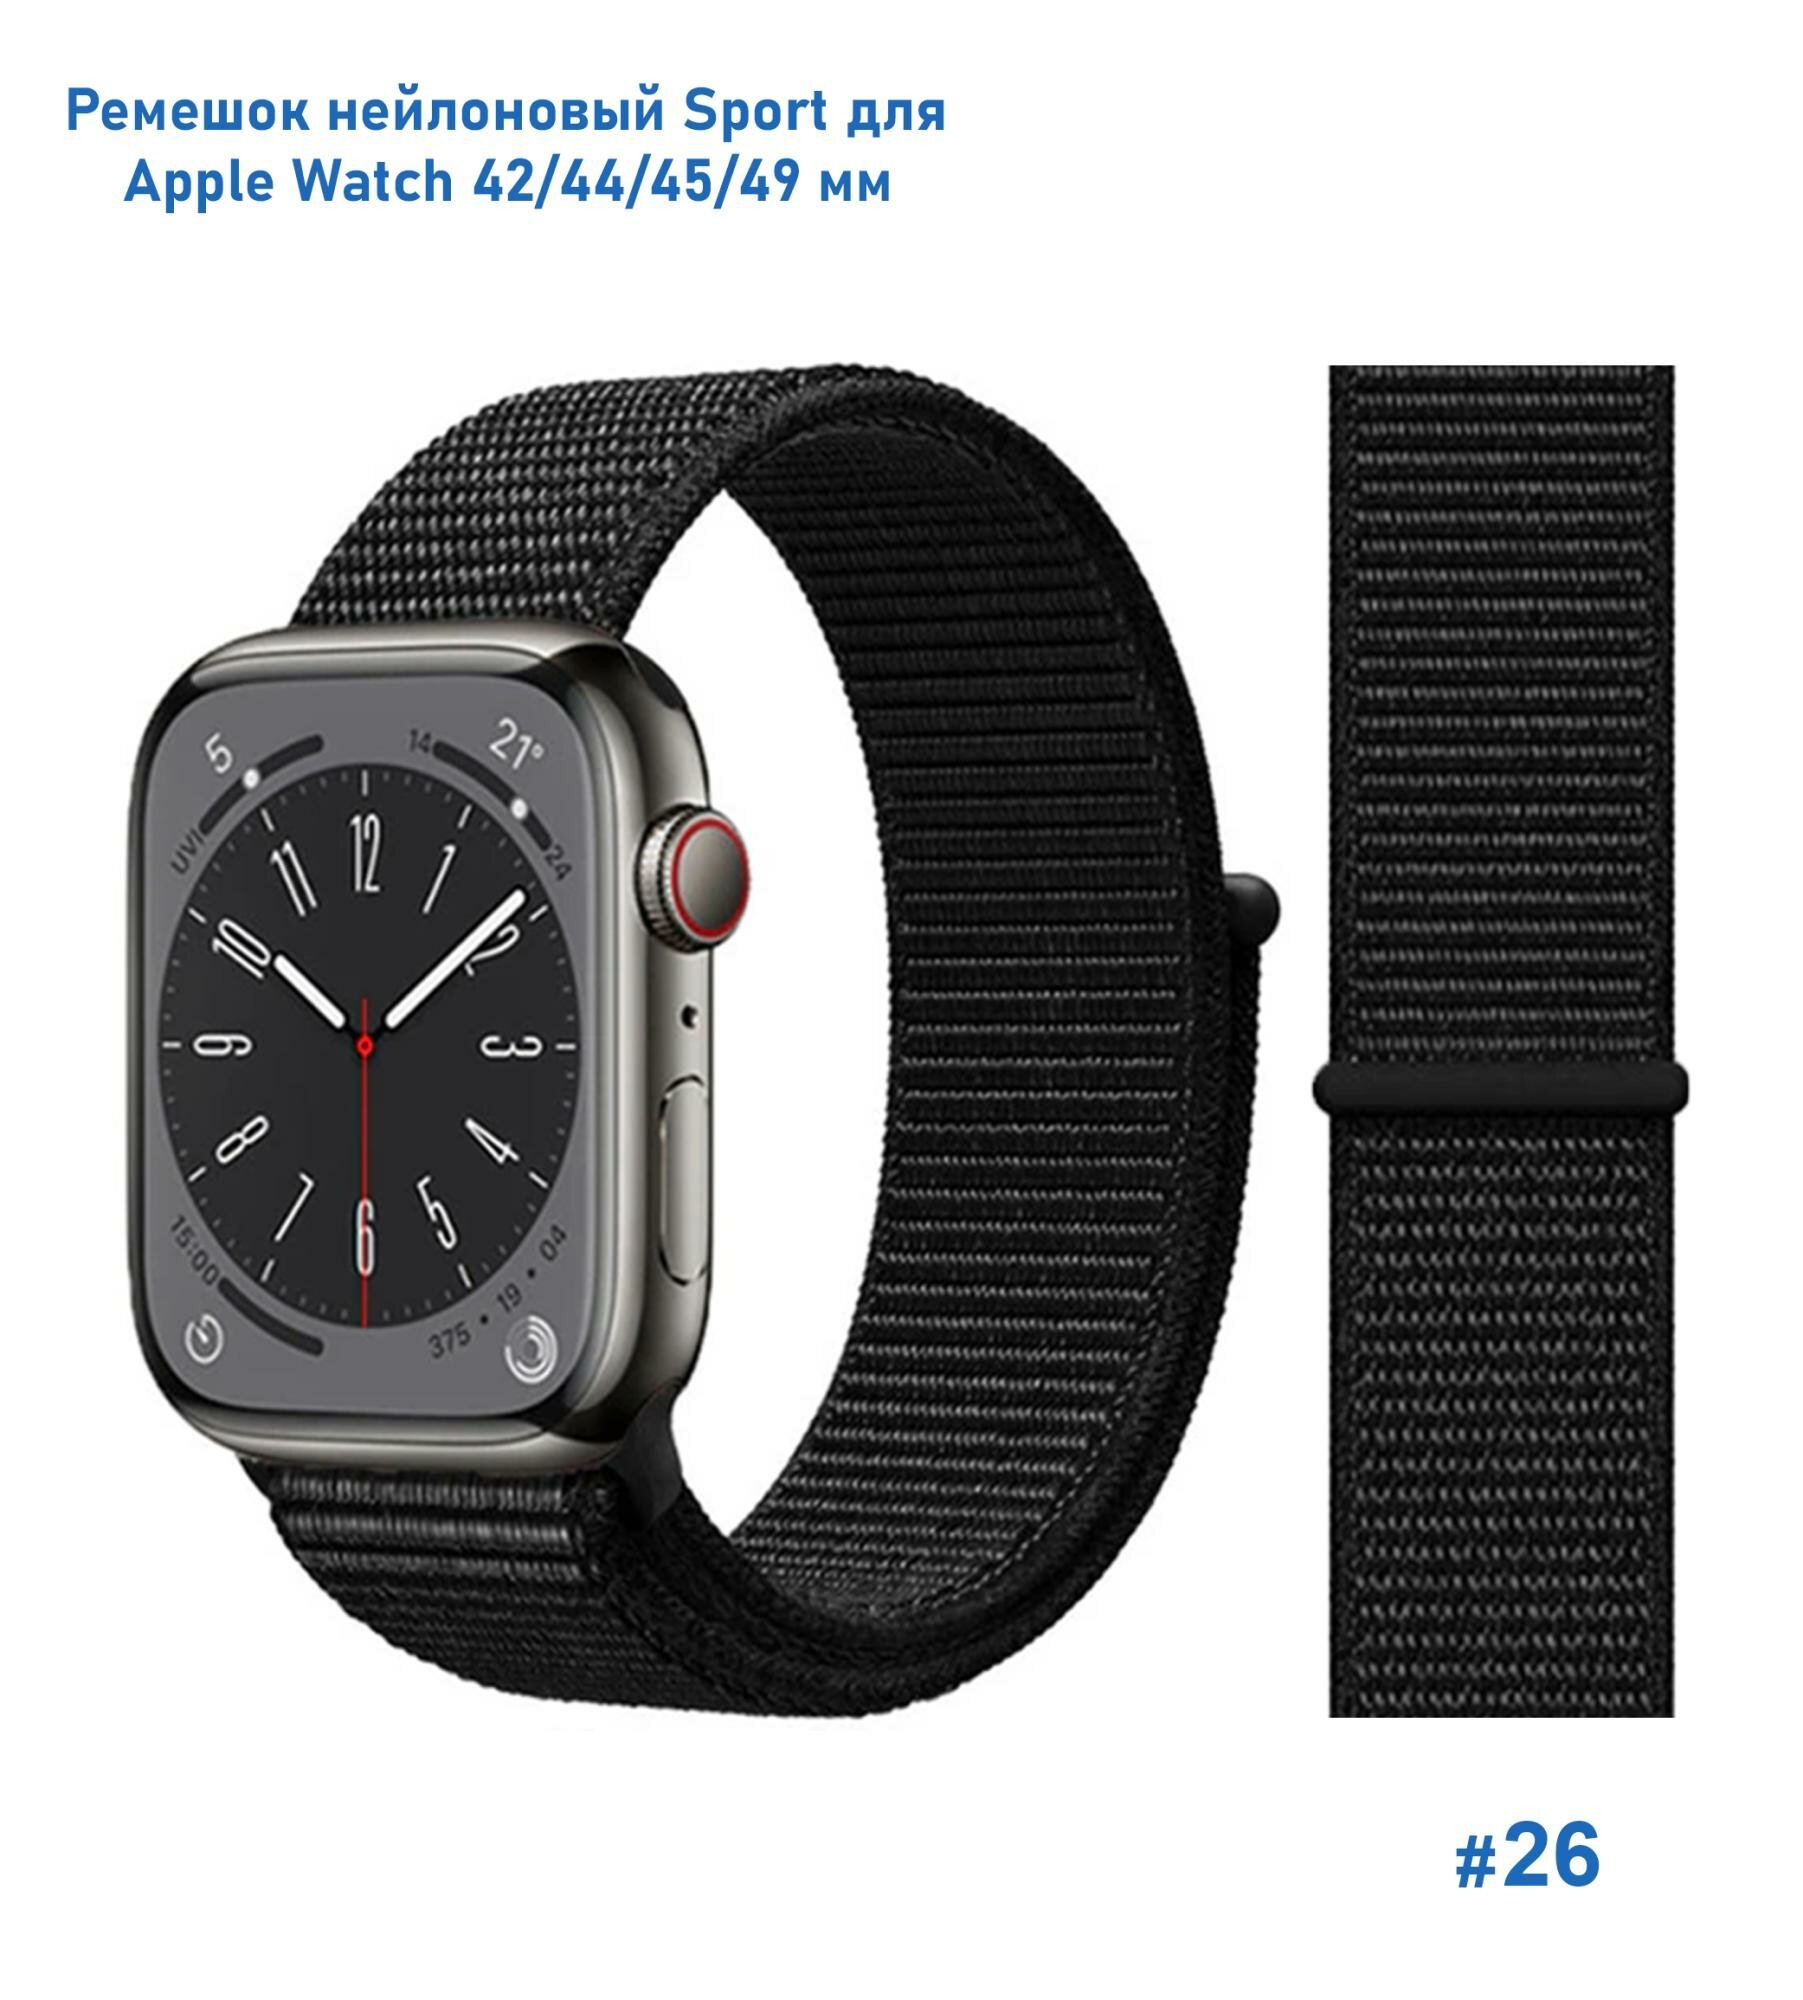 Ремешок нейлоновый Sport для Apple Watch 42/44/45/49 мм 255мм на липучке порошково-розовый (12)